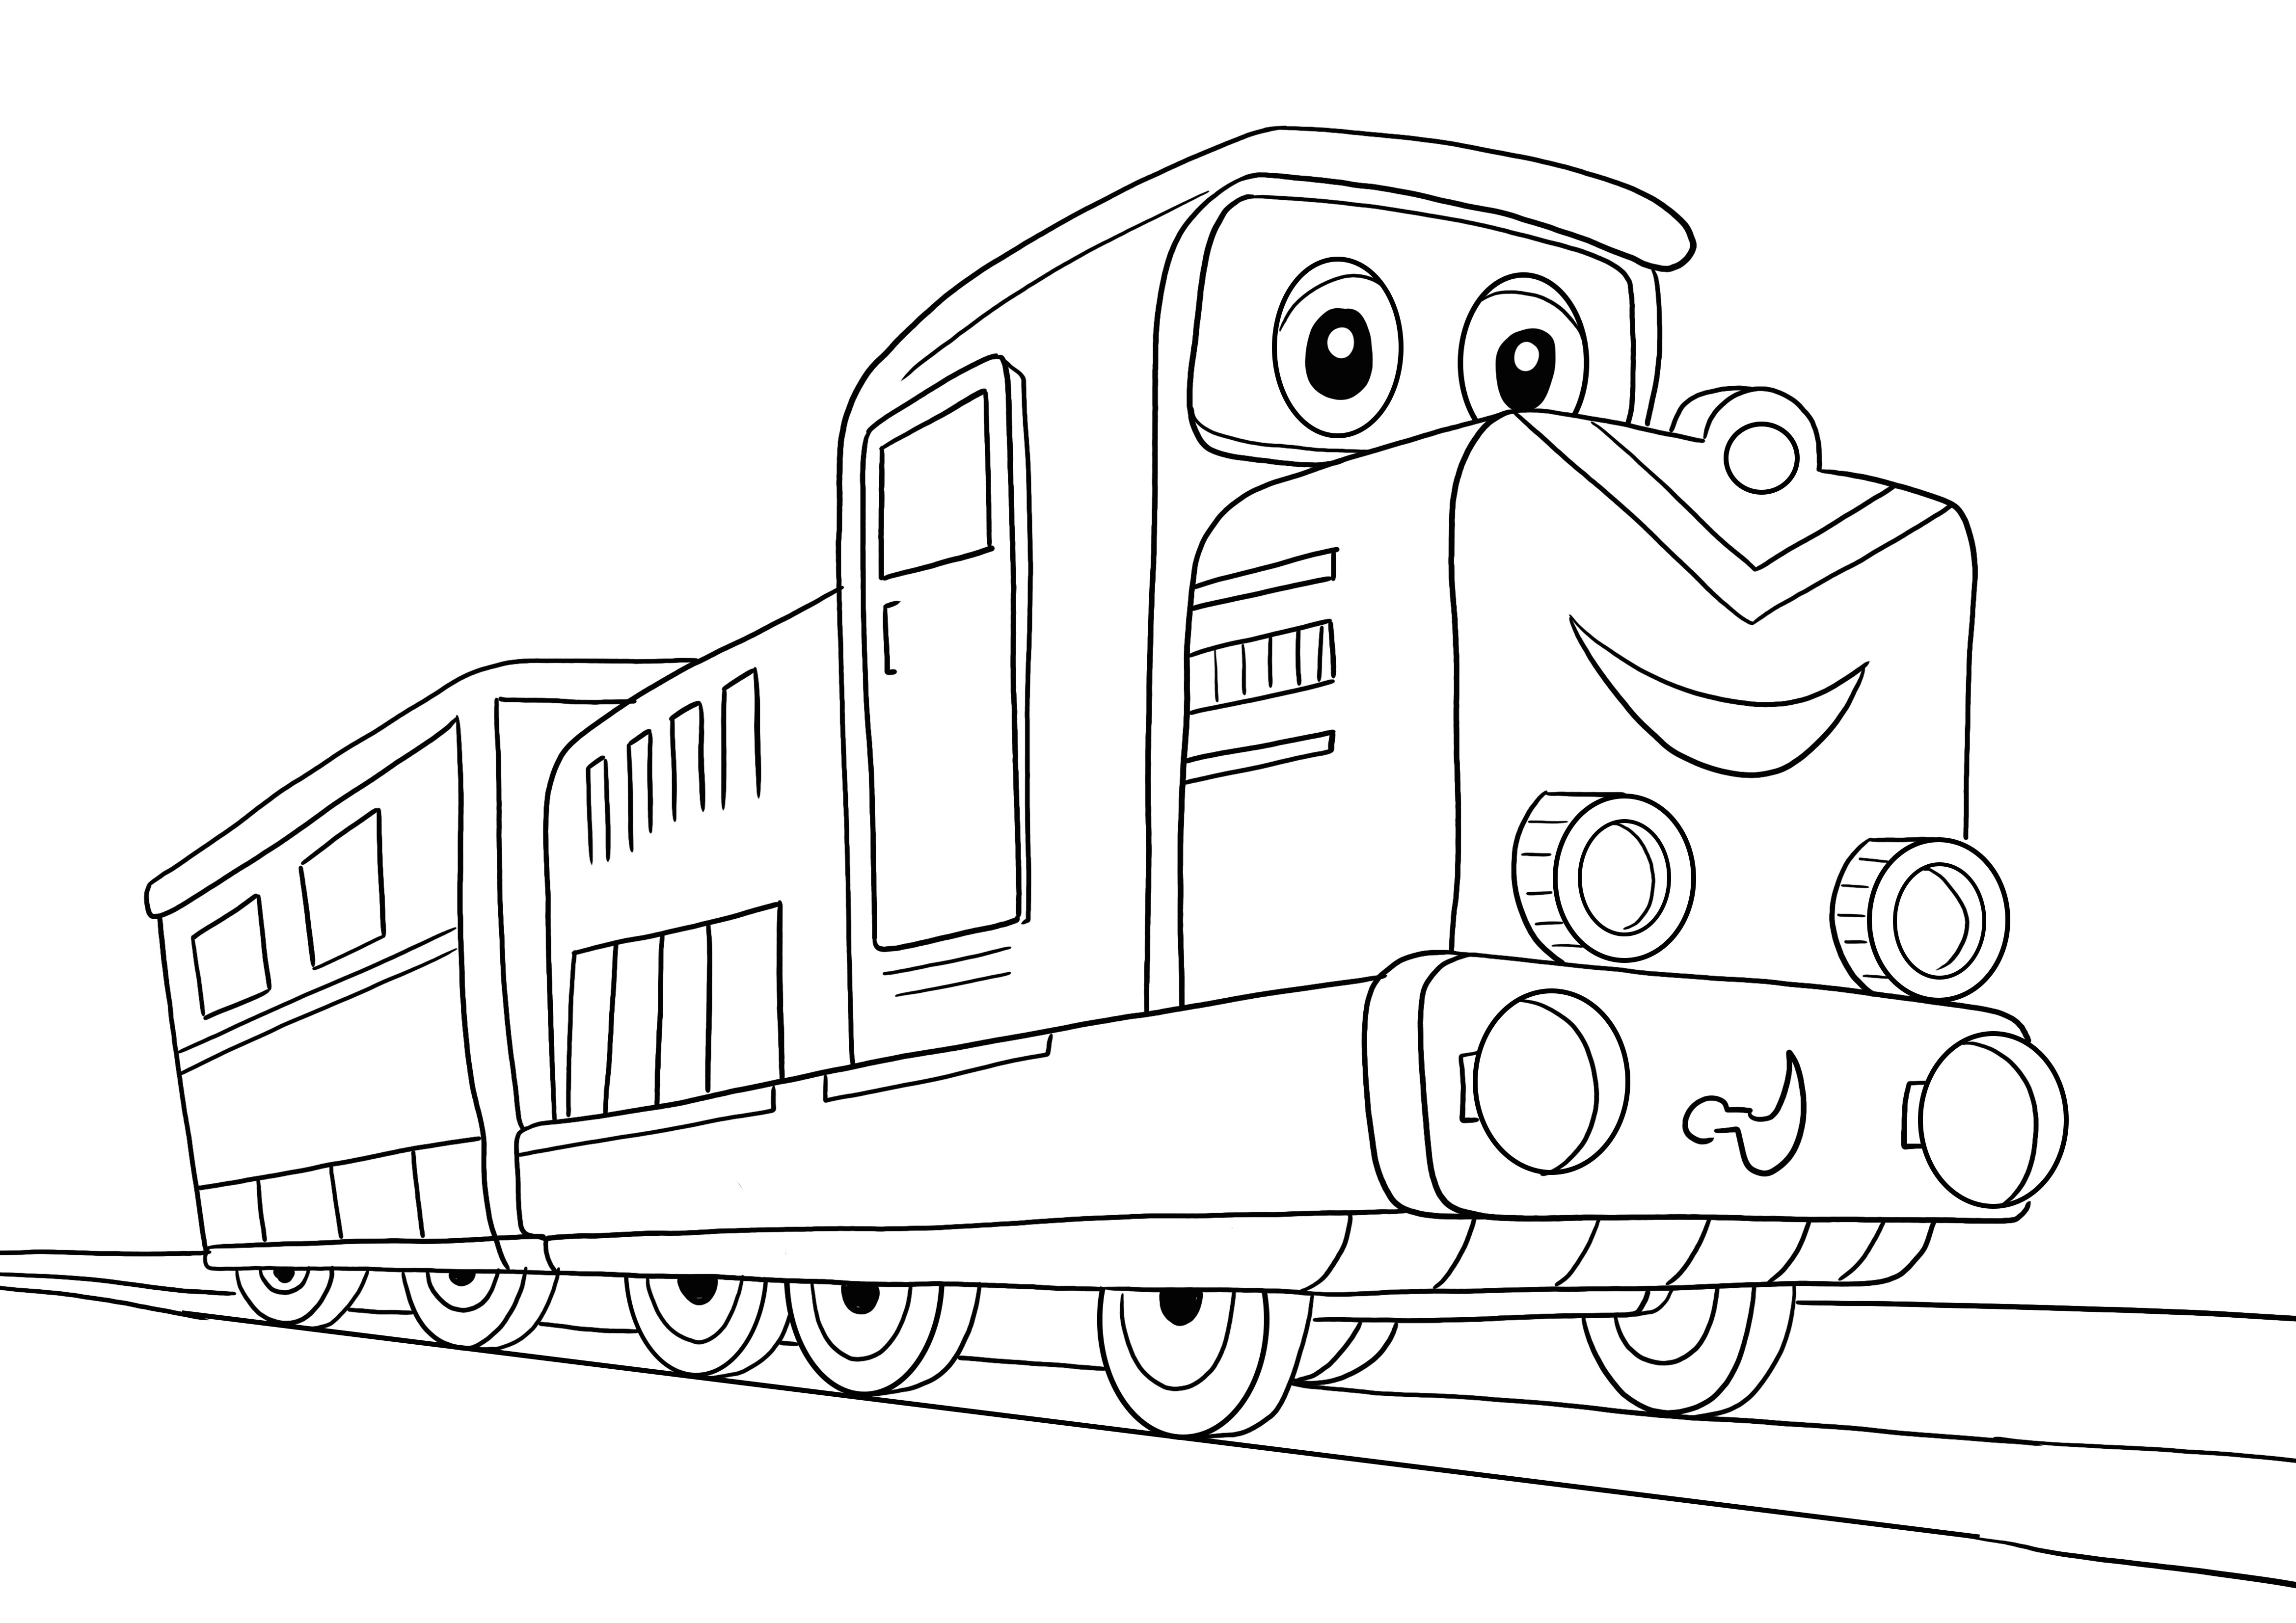 Ecco la nostra immagine da colorare del treno dei cartoni animati per far imparare divertendosi i bambini